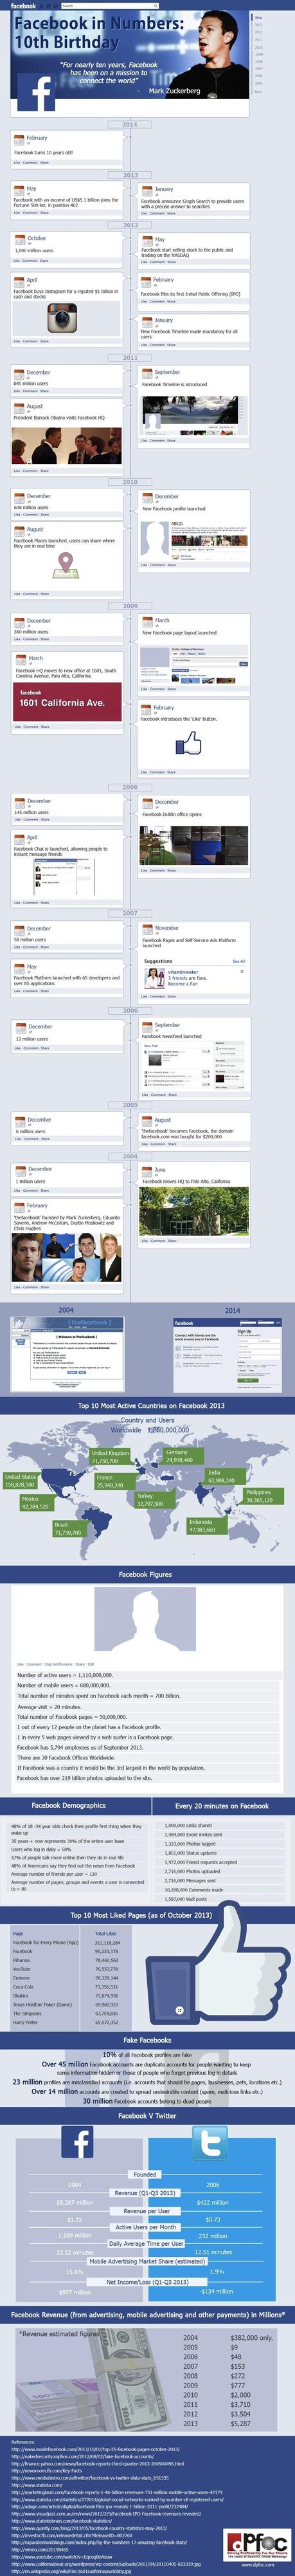 Facebook: 10 ans déjà!